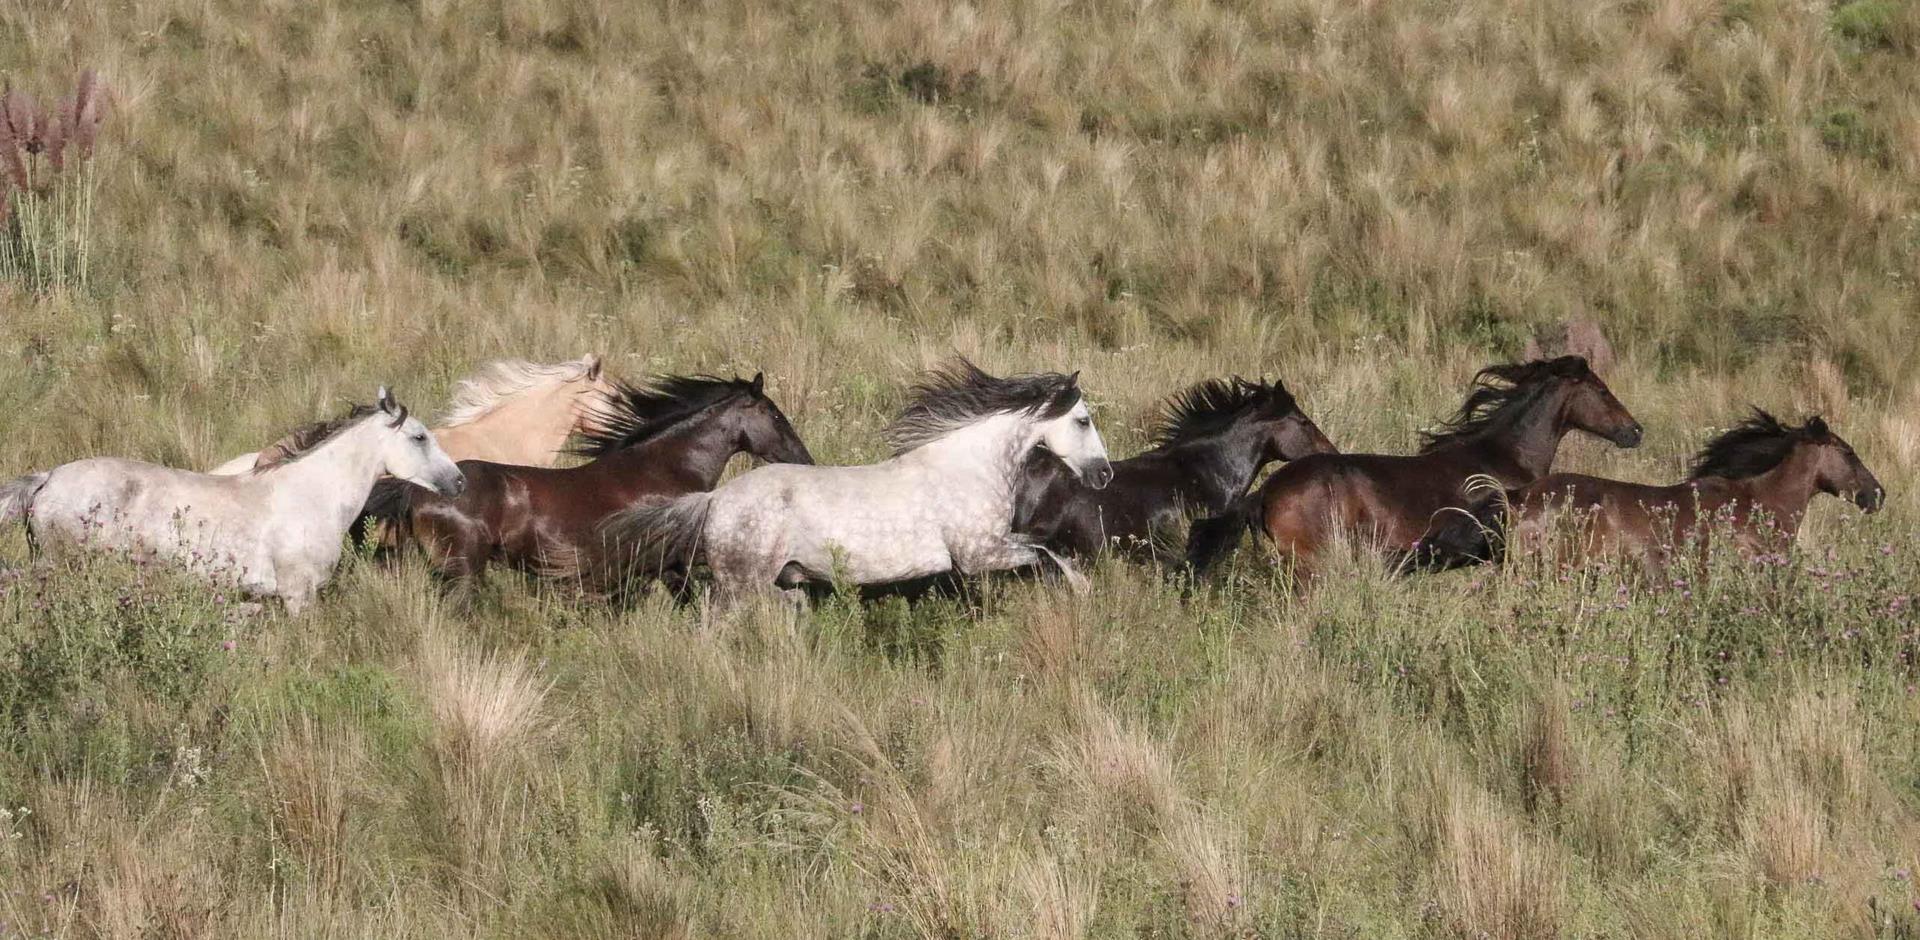 Horses, Argentina, A&K